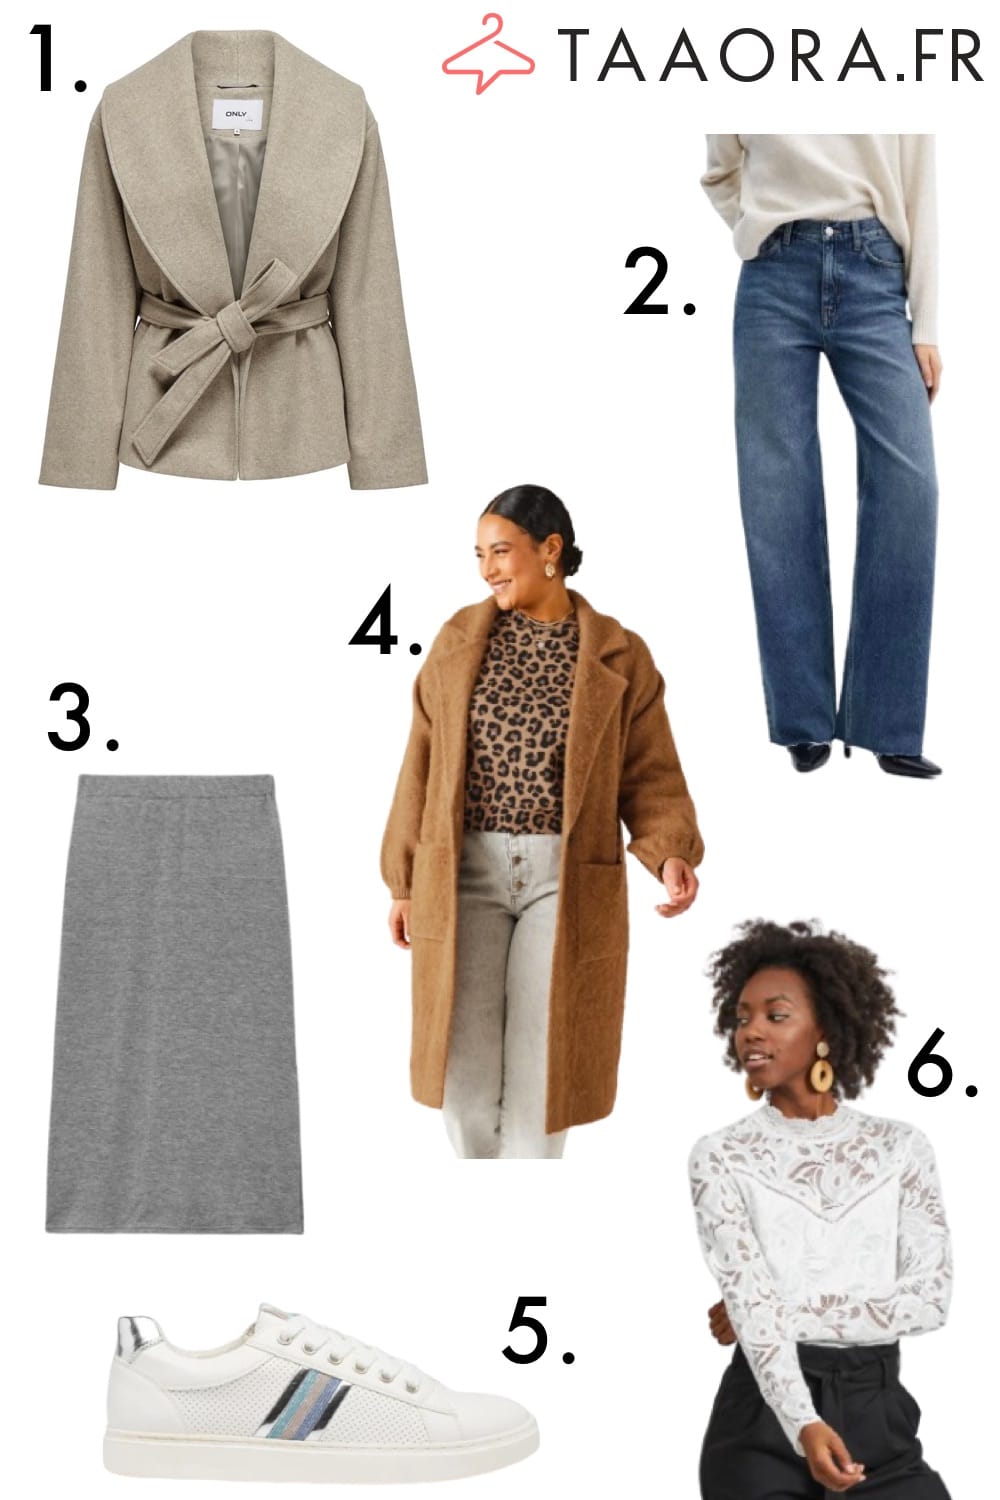 6 accessoires de mode pour un look tendance - Taaora - Blog Mode,  Tendances, Looks